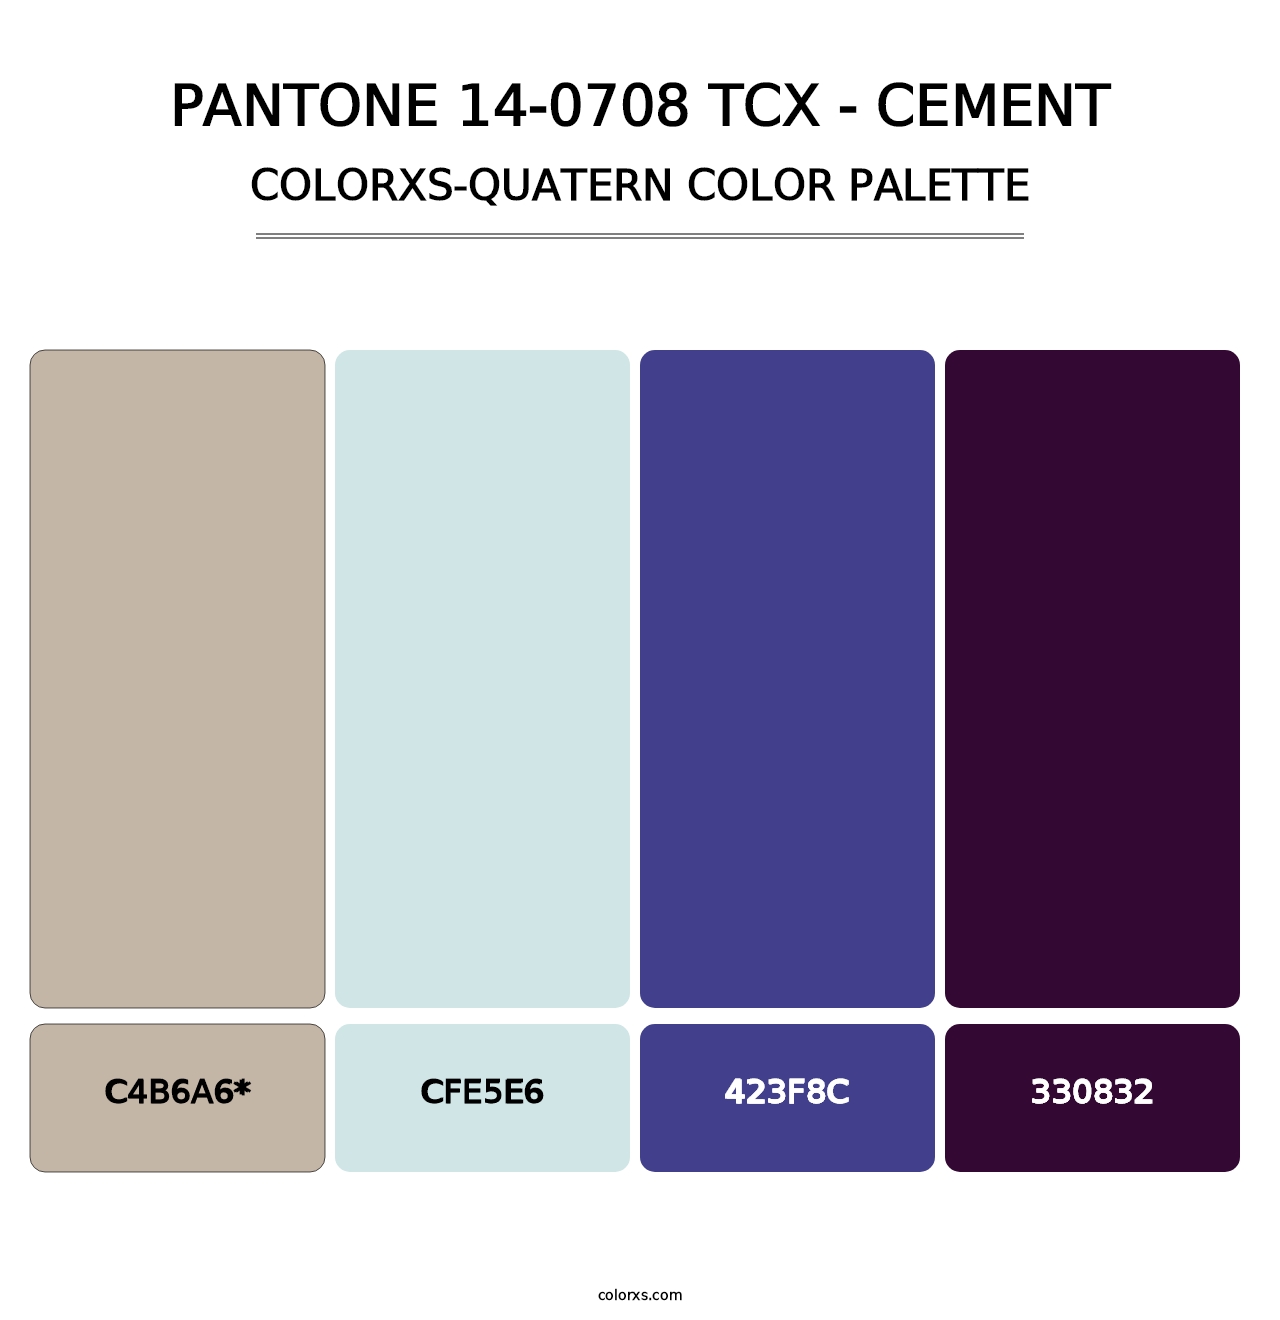 PANTONE 14-0708 TCX - Cement - Colorxs Quatern Palette